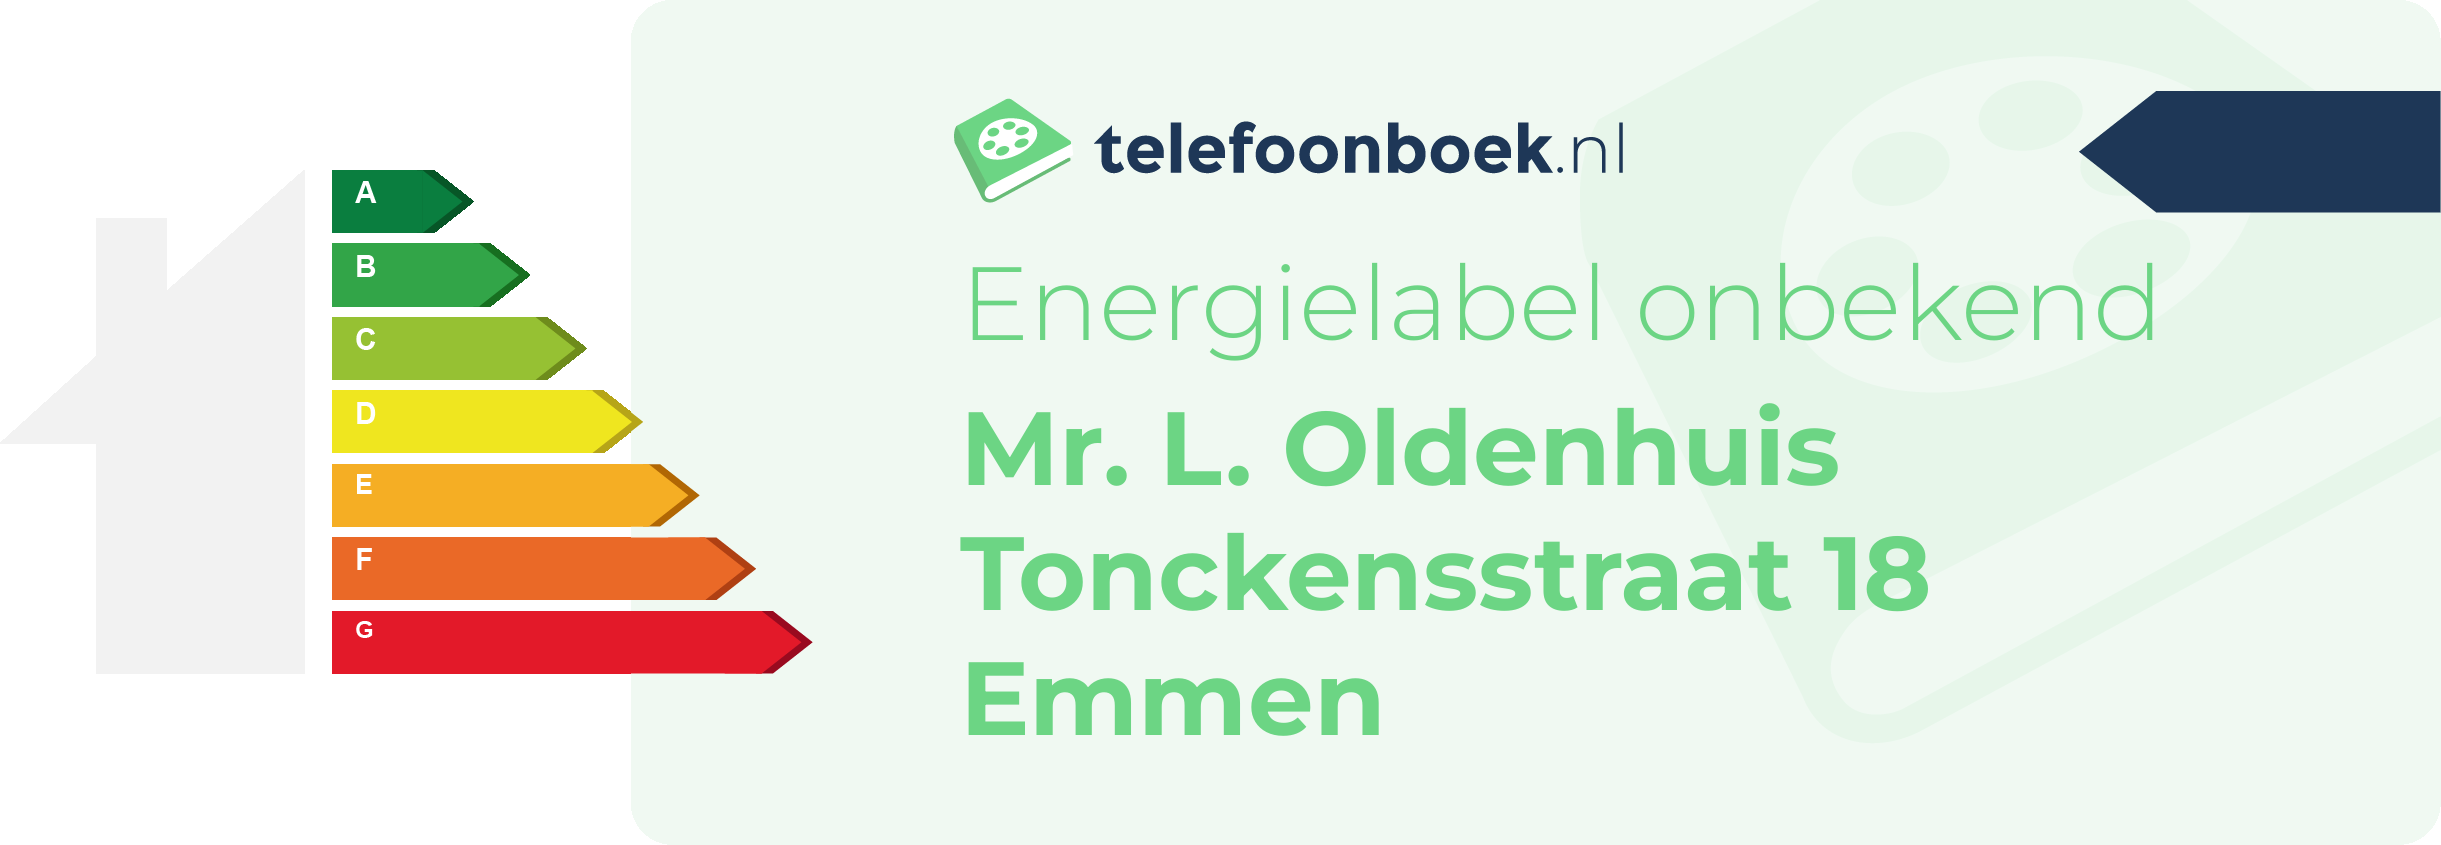 Energielabel Mr. L. Oldenhuis Tonckensstraat 18 Emmen